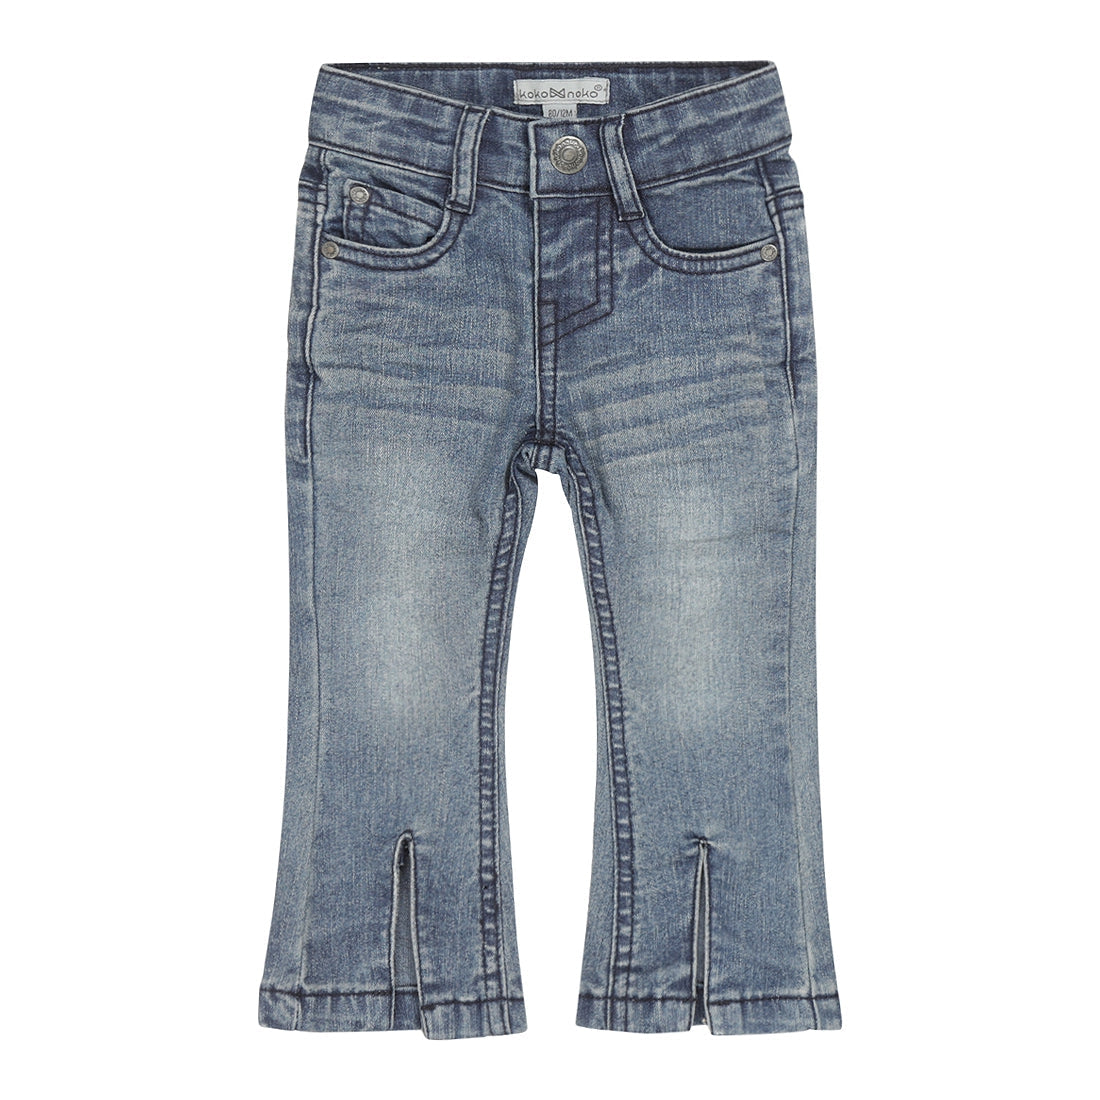 Meisjes Jeans flared van Koko Noko in de kleur Blue jeans in maat 128.